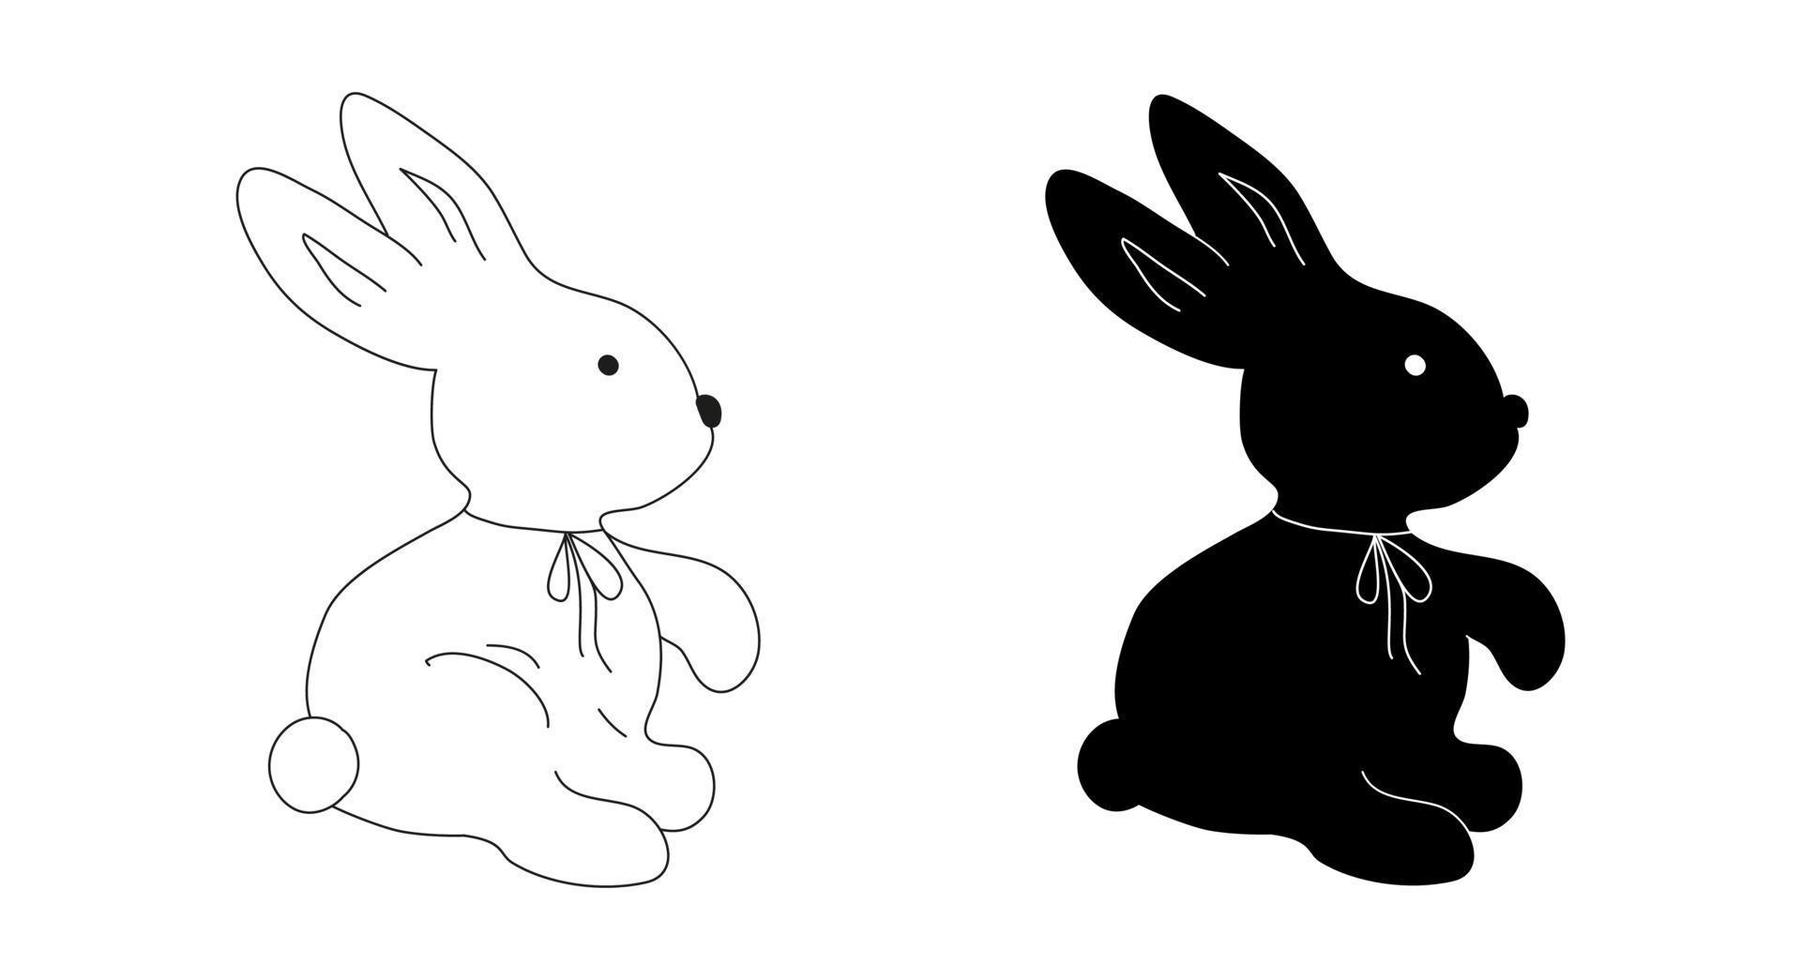 Hasen Silhouetten. schwarz und Weiß Umriss. Vektor Bild von Kaninchen, Hasen, Bogen im Gekritzel Stil.